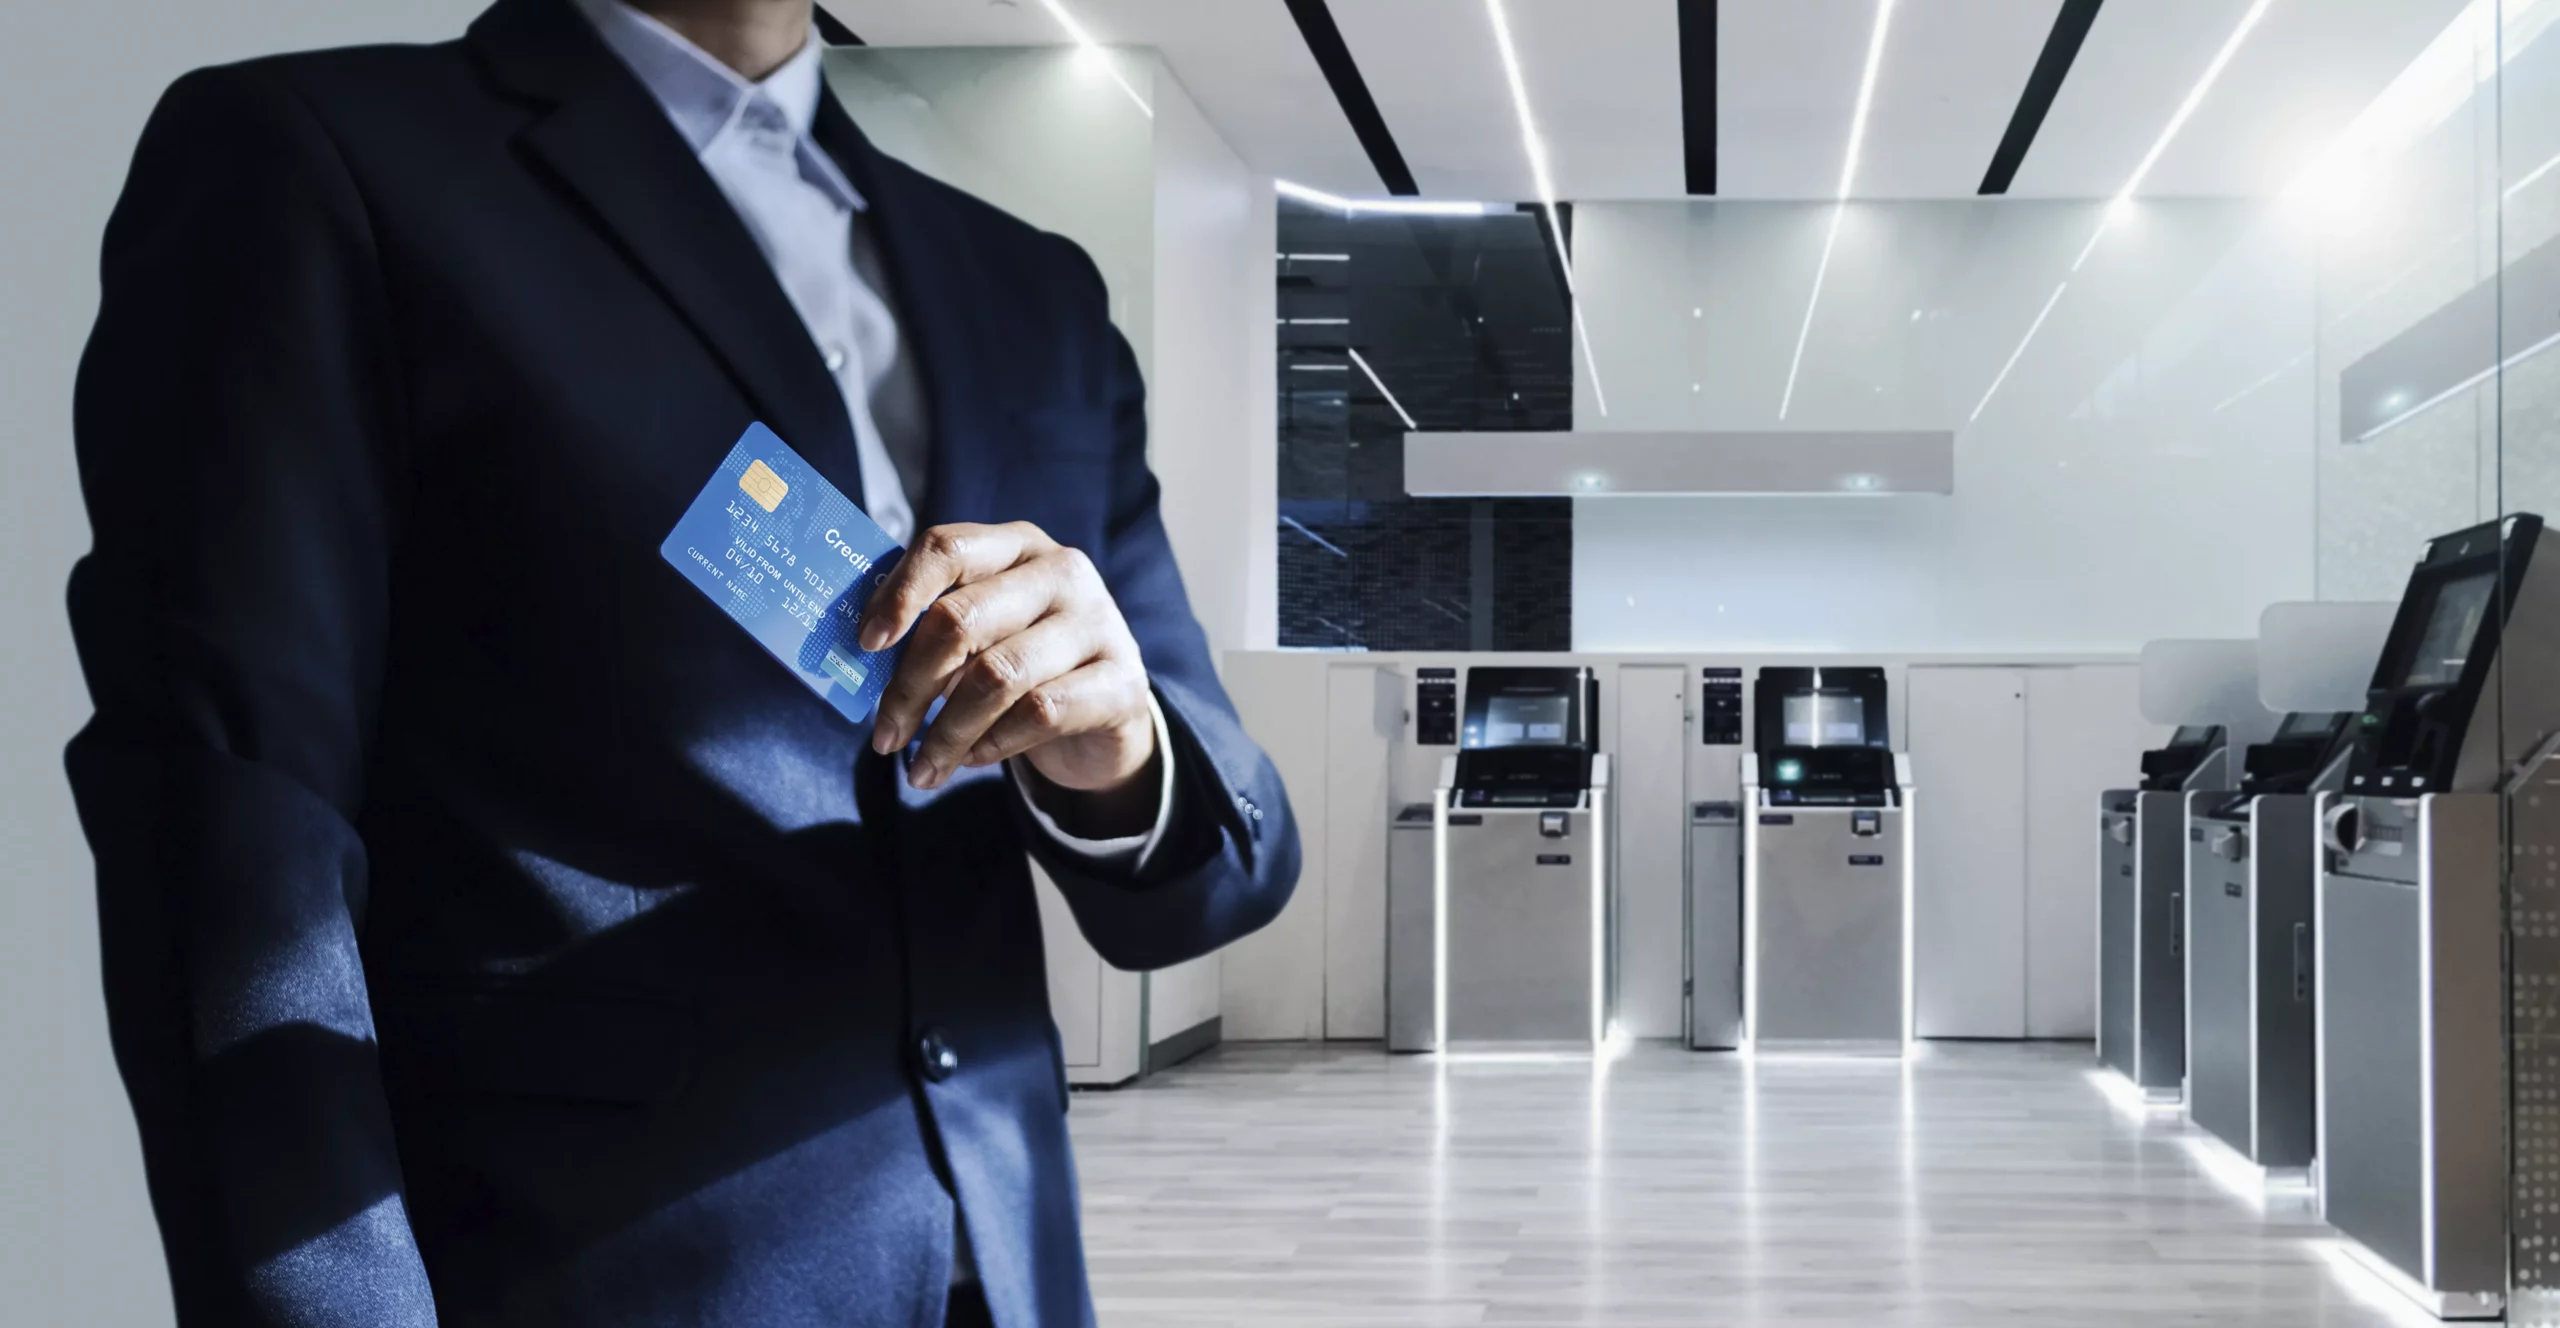 Ejecutivo dentro de un Banco mostrando una tarjeta bancaria represetnando la seguridad de datos y monitoreo de usuarios internos en el sector bancario